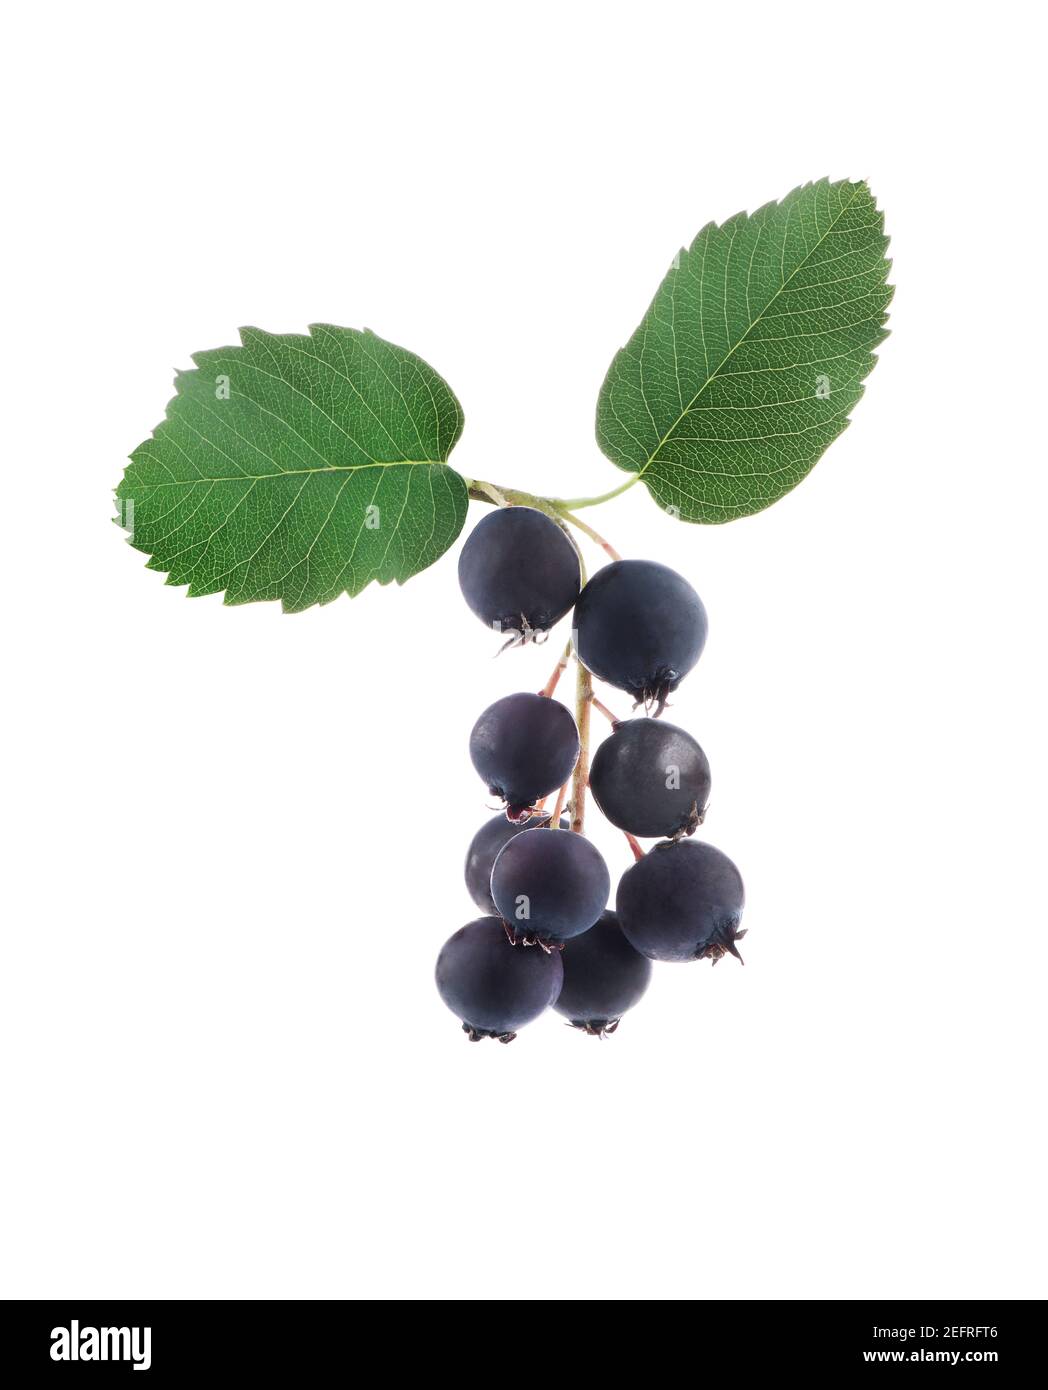 Chiocciole di bacche di Saskatoon o di serviceberry del Pacifico con foglie. Amelanchier alnifolia, servizio di frutti di bosco occidentali. edi viola blu scuro cresciuto organicamente Foto Stock